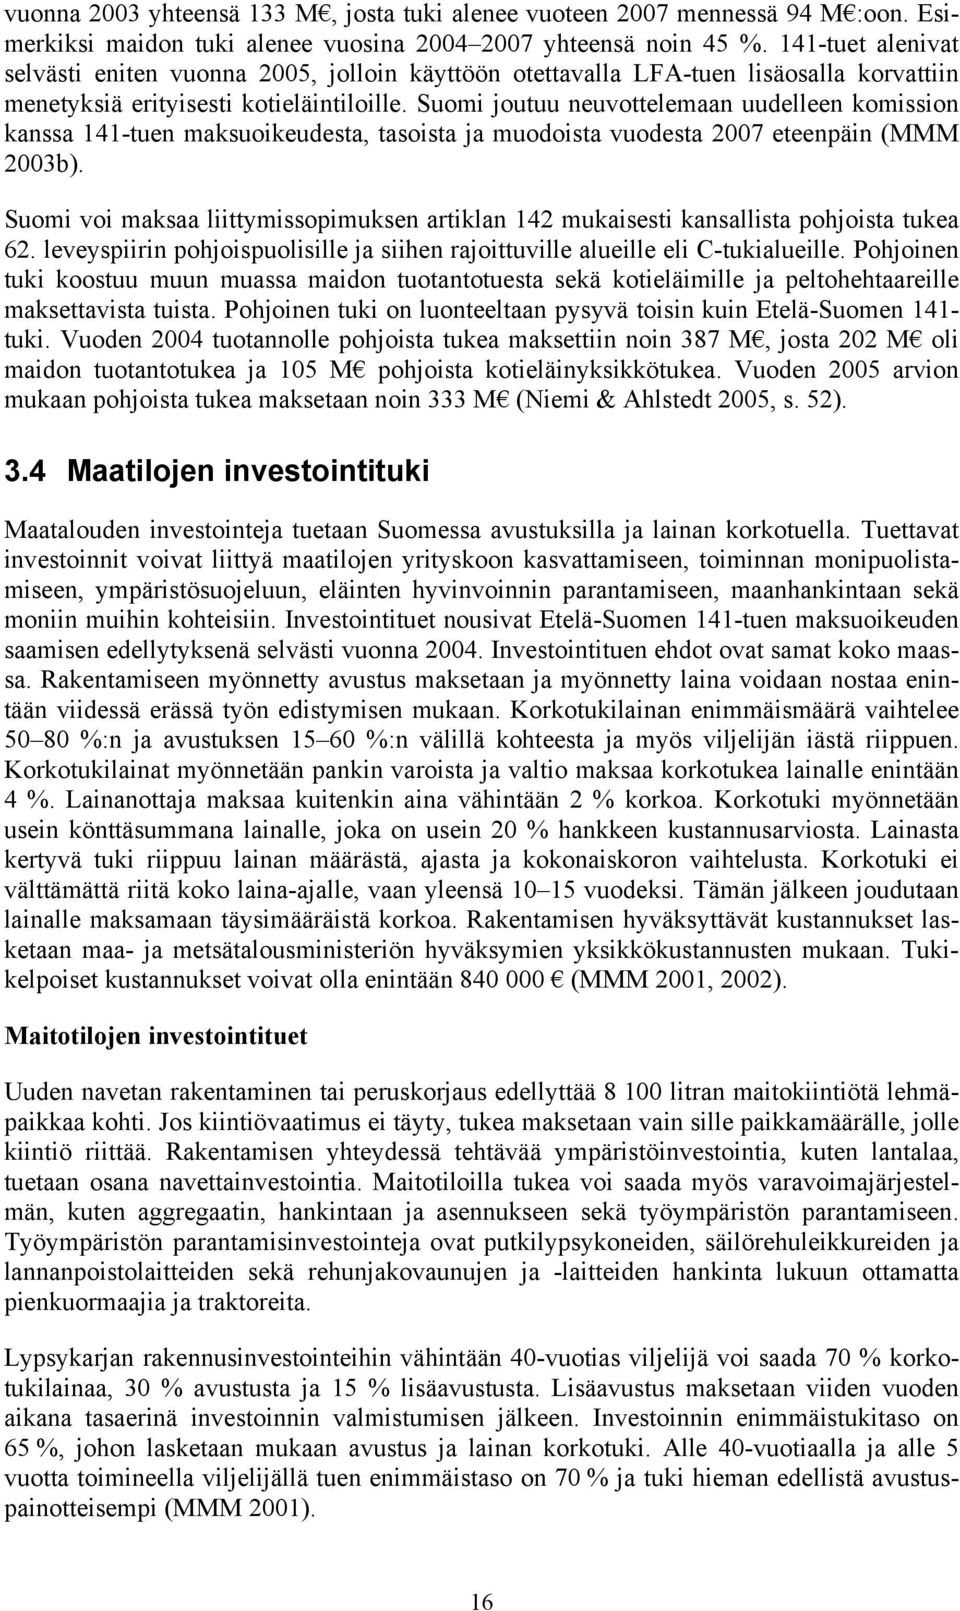 Suomi joutuu neuvottelemaan uudelleen komission kanssa 141-tuen maksuoikeudesta, tasoista ja muodoista vuodesta 2007 eteenpäin (MMM 2003b).